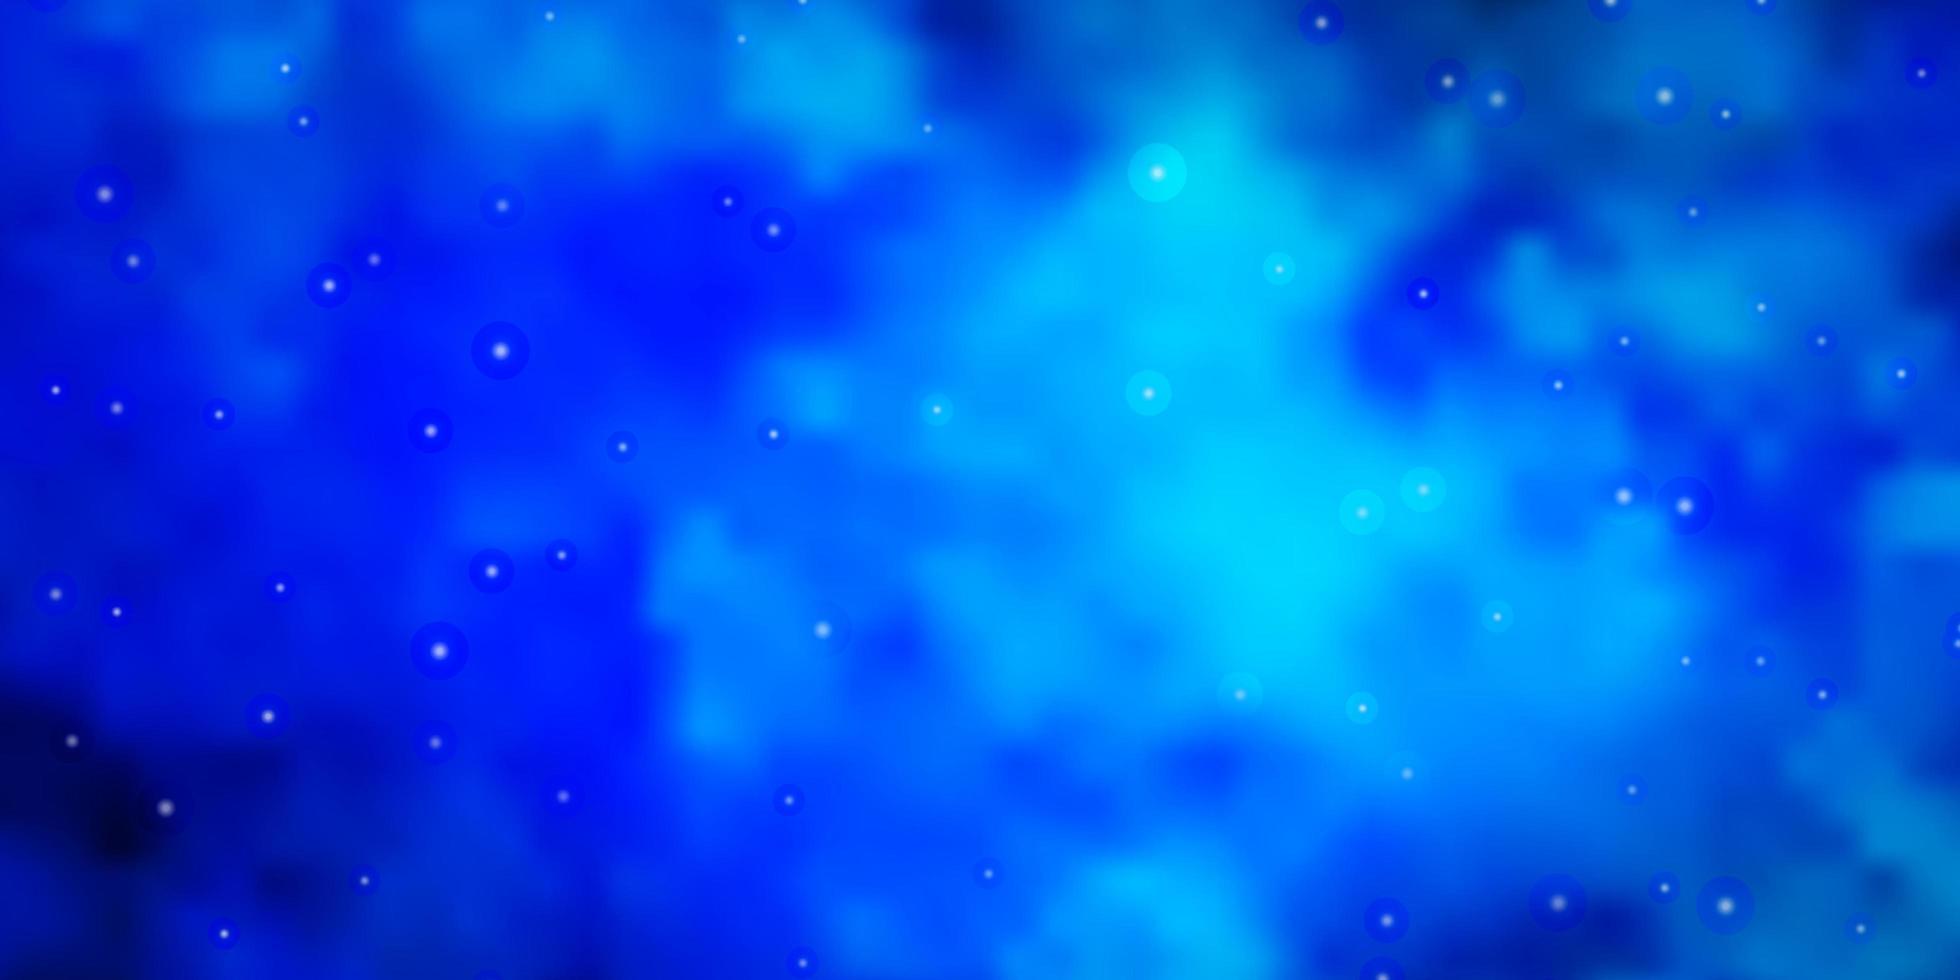 Fondo de vector azul claro con estrellas pequeñas y grandes.